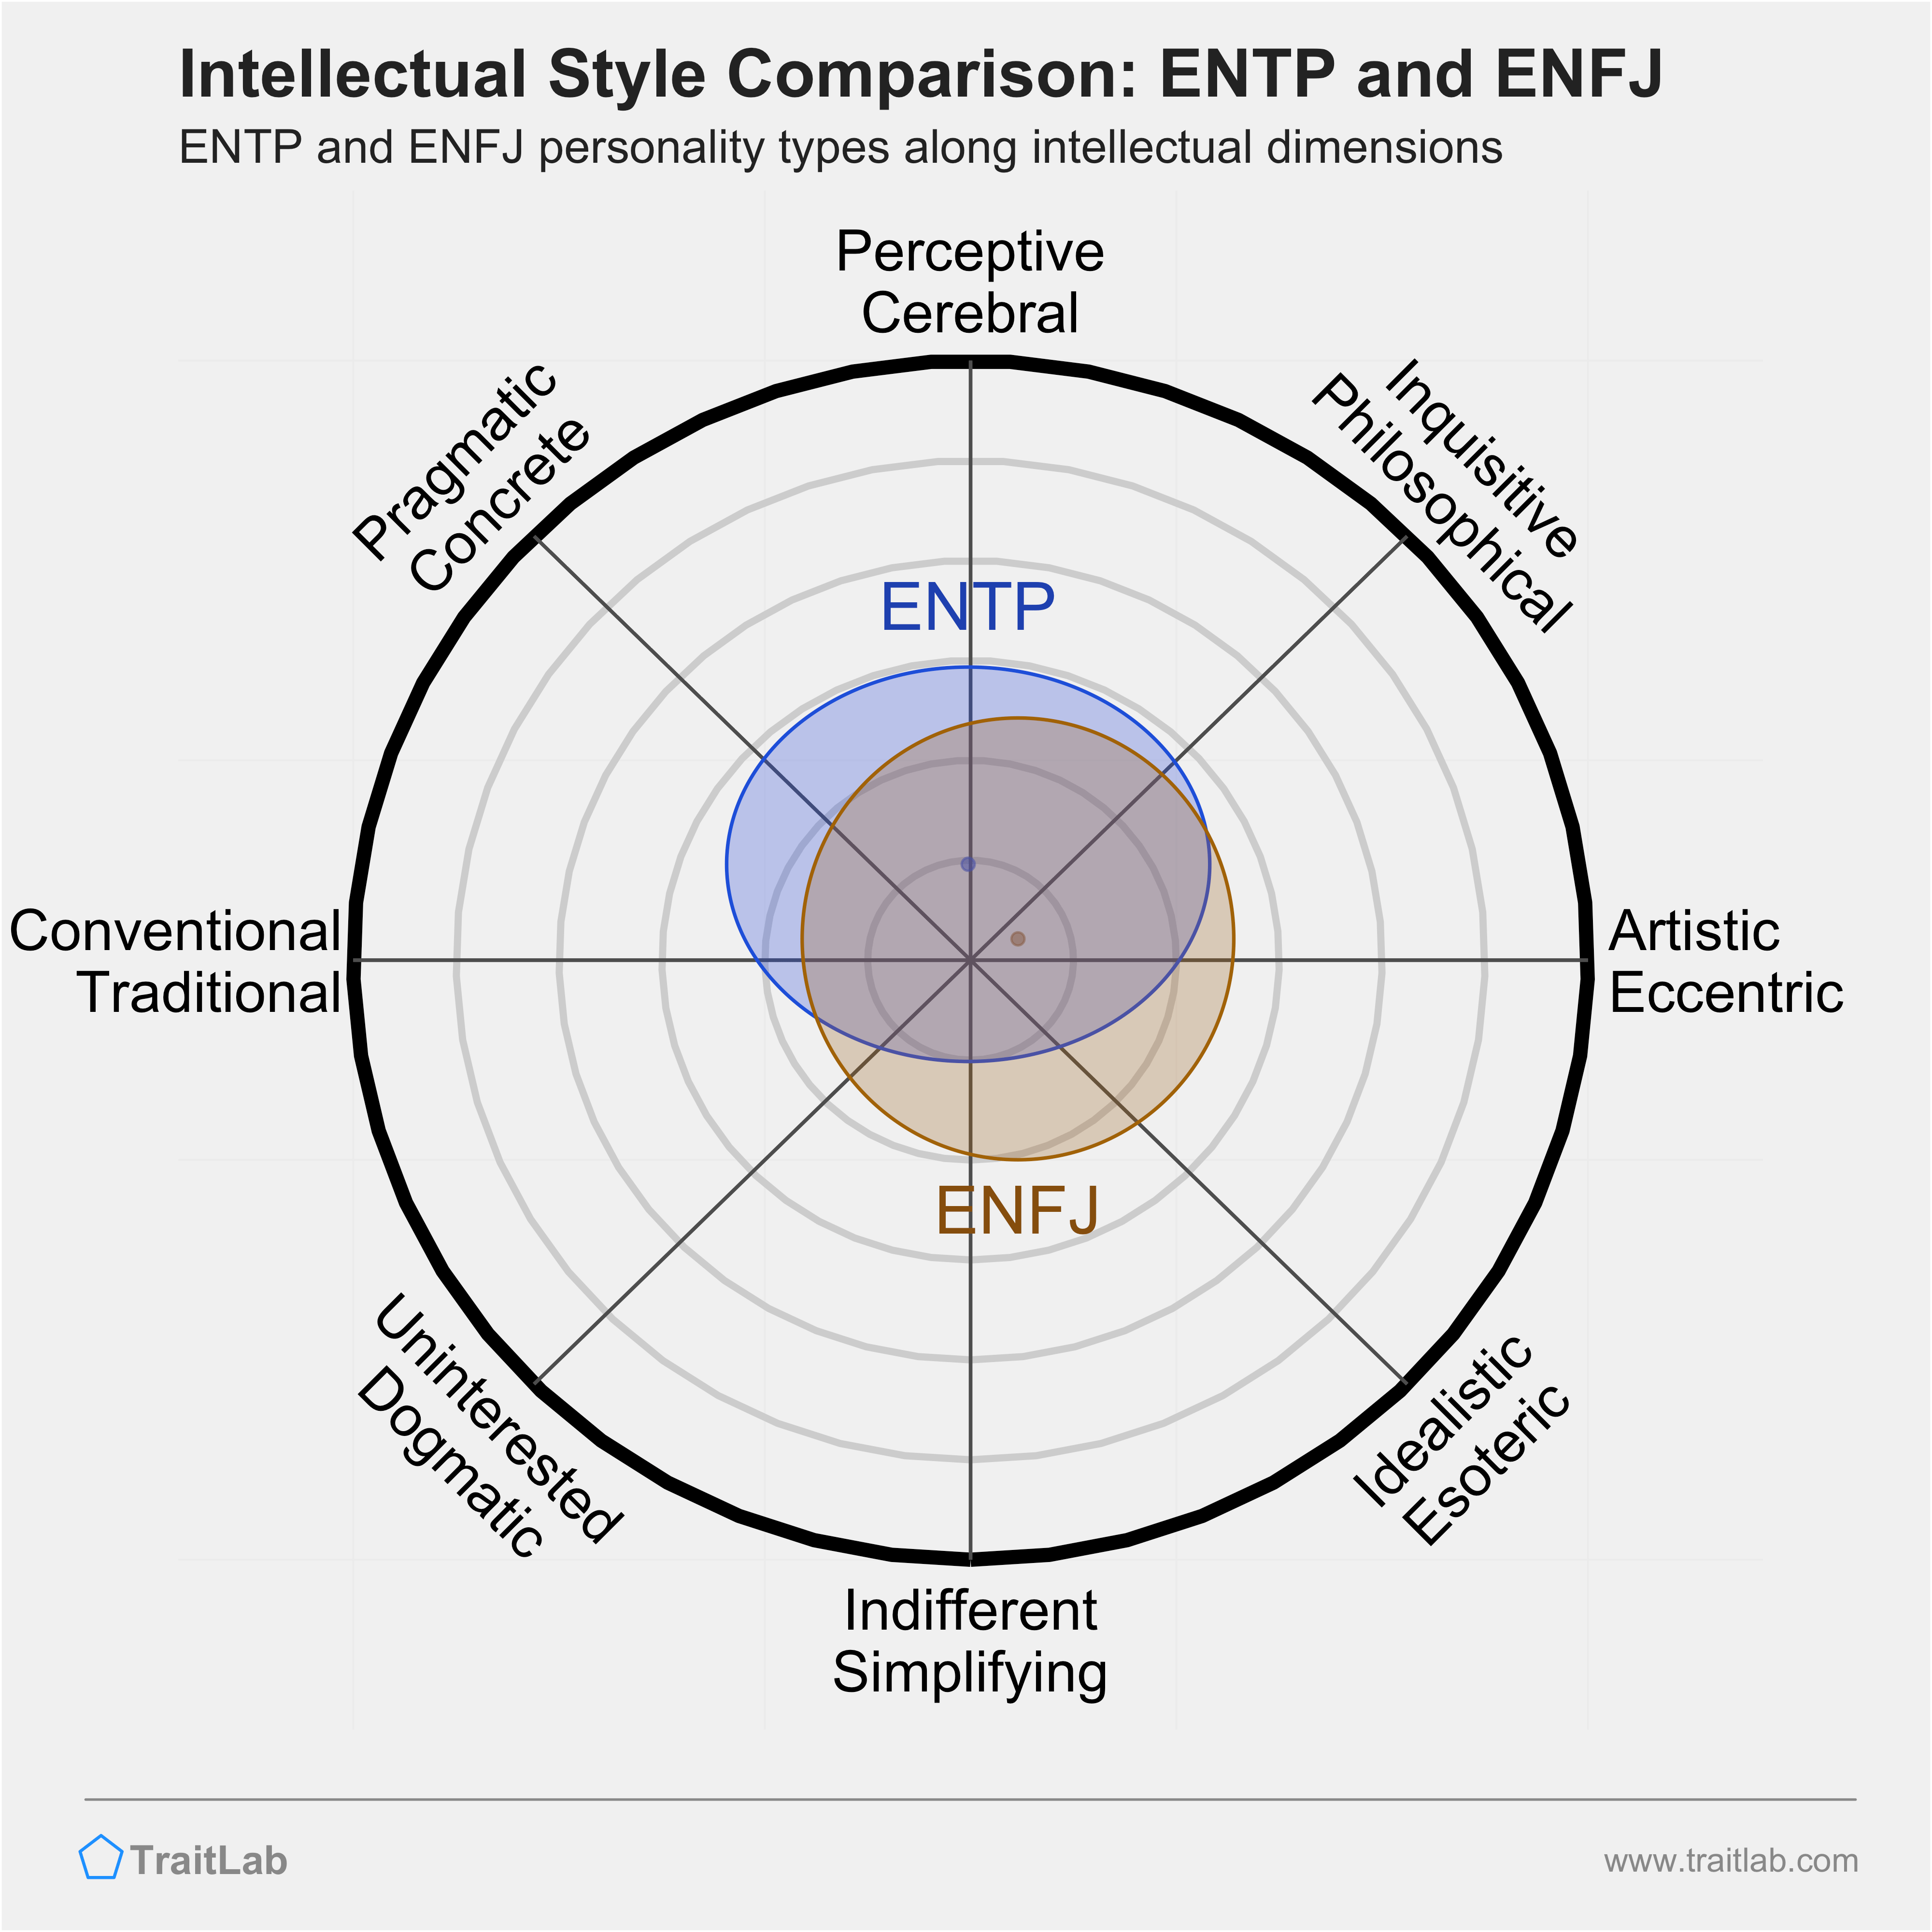 ENTP and ENFJ comparison across intellectual dimensions